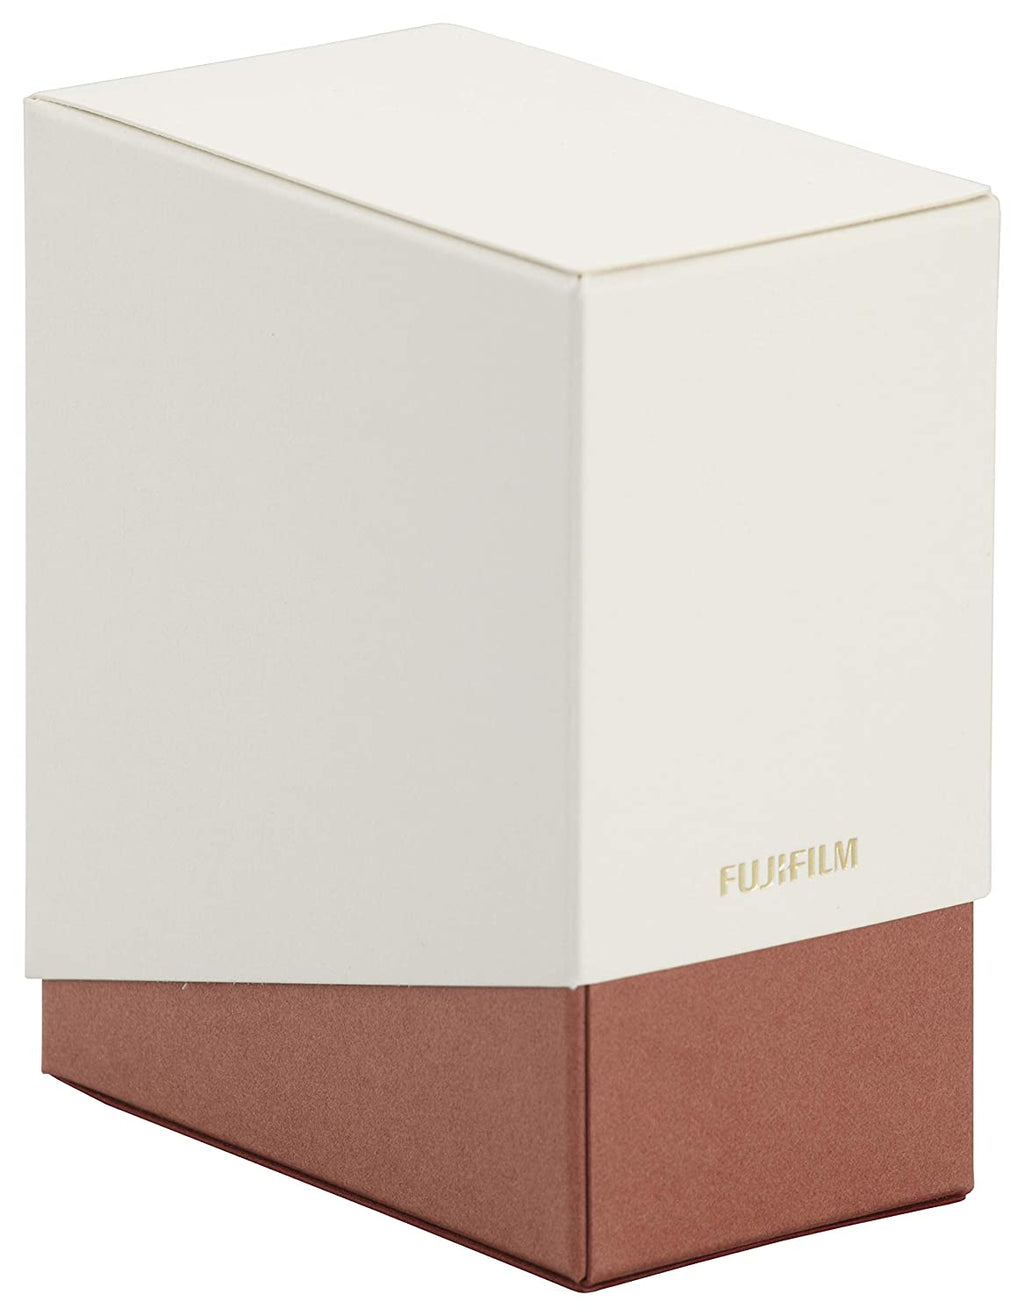 खुला बॉक्स, अप्रयुक्त फुजीफिल्म इंस्टैक्स स्क्वायर फिल्म पेपर बॉक्स (सफ़ेद)